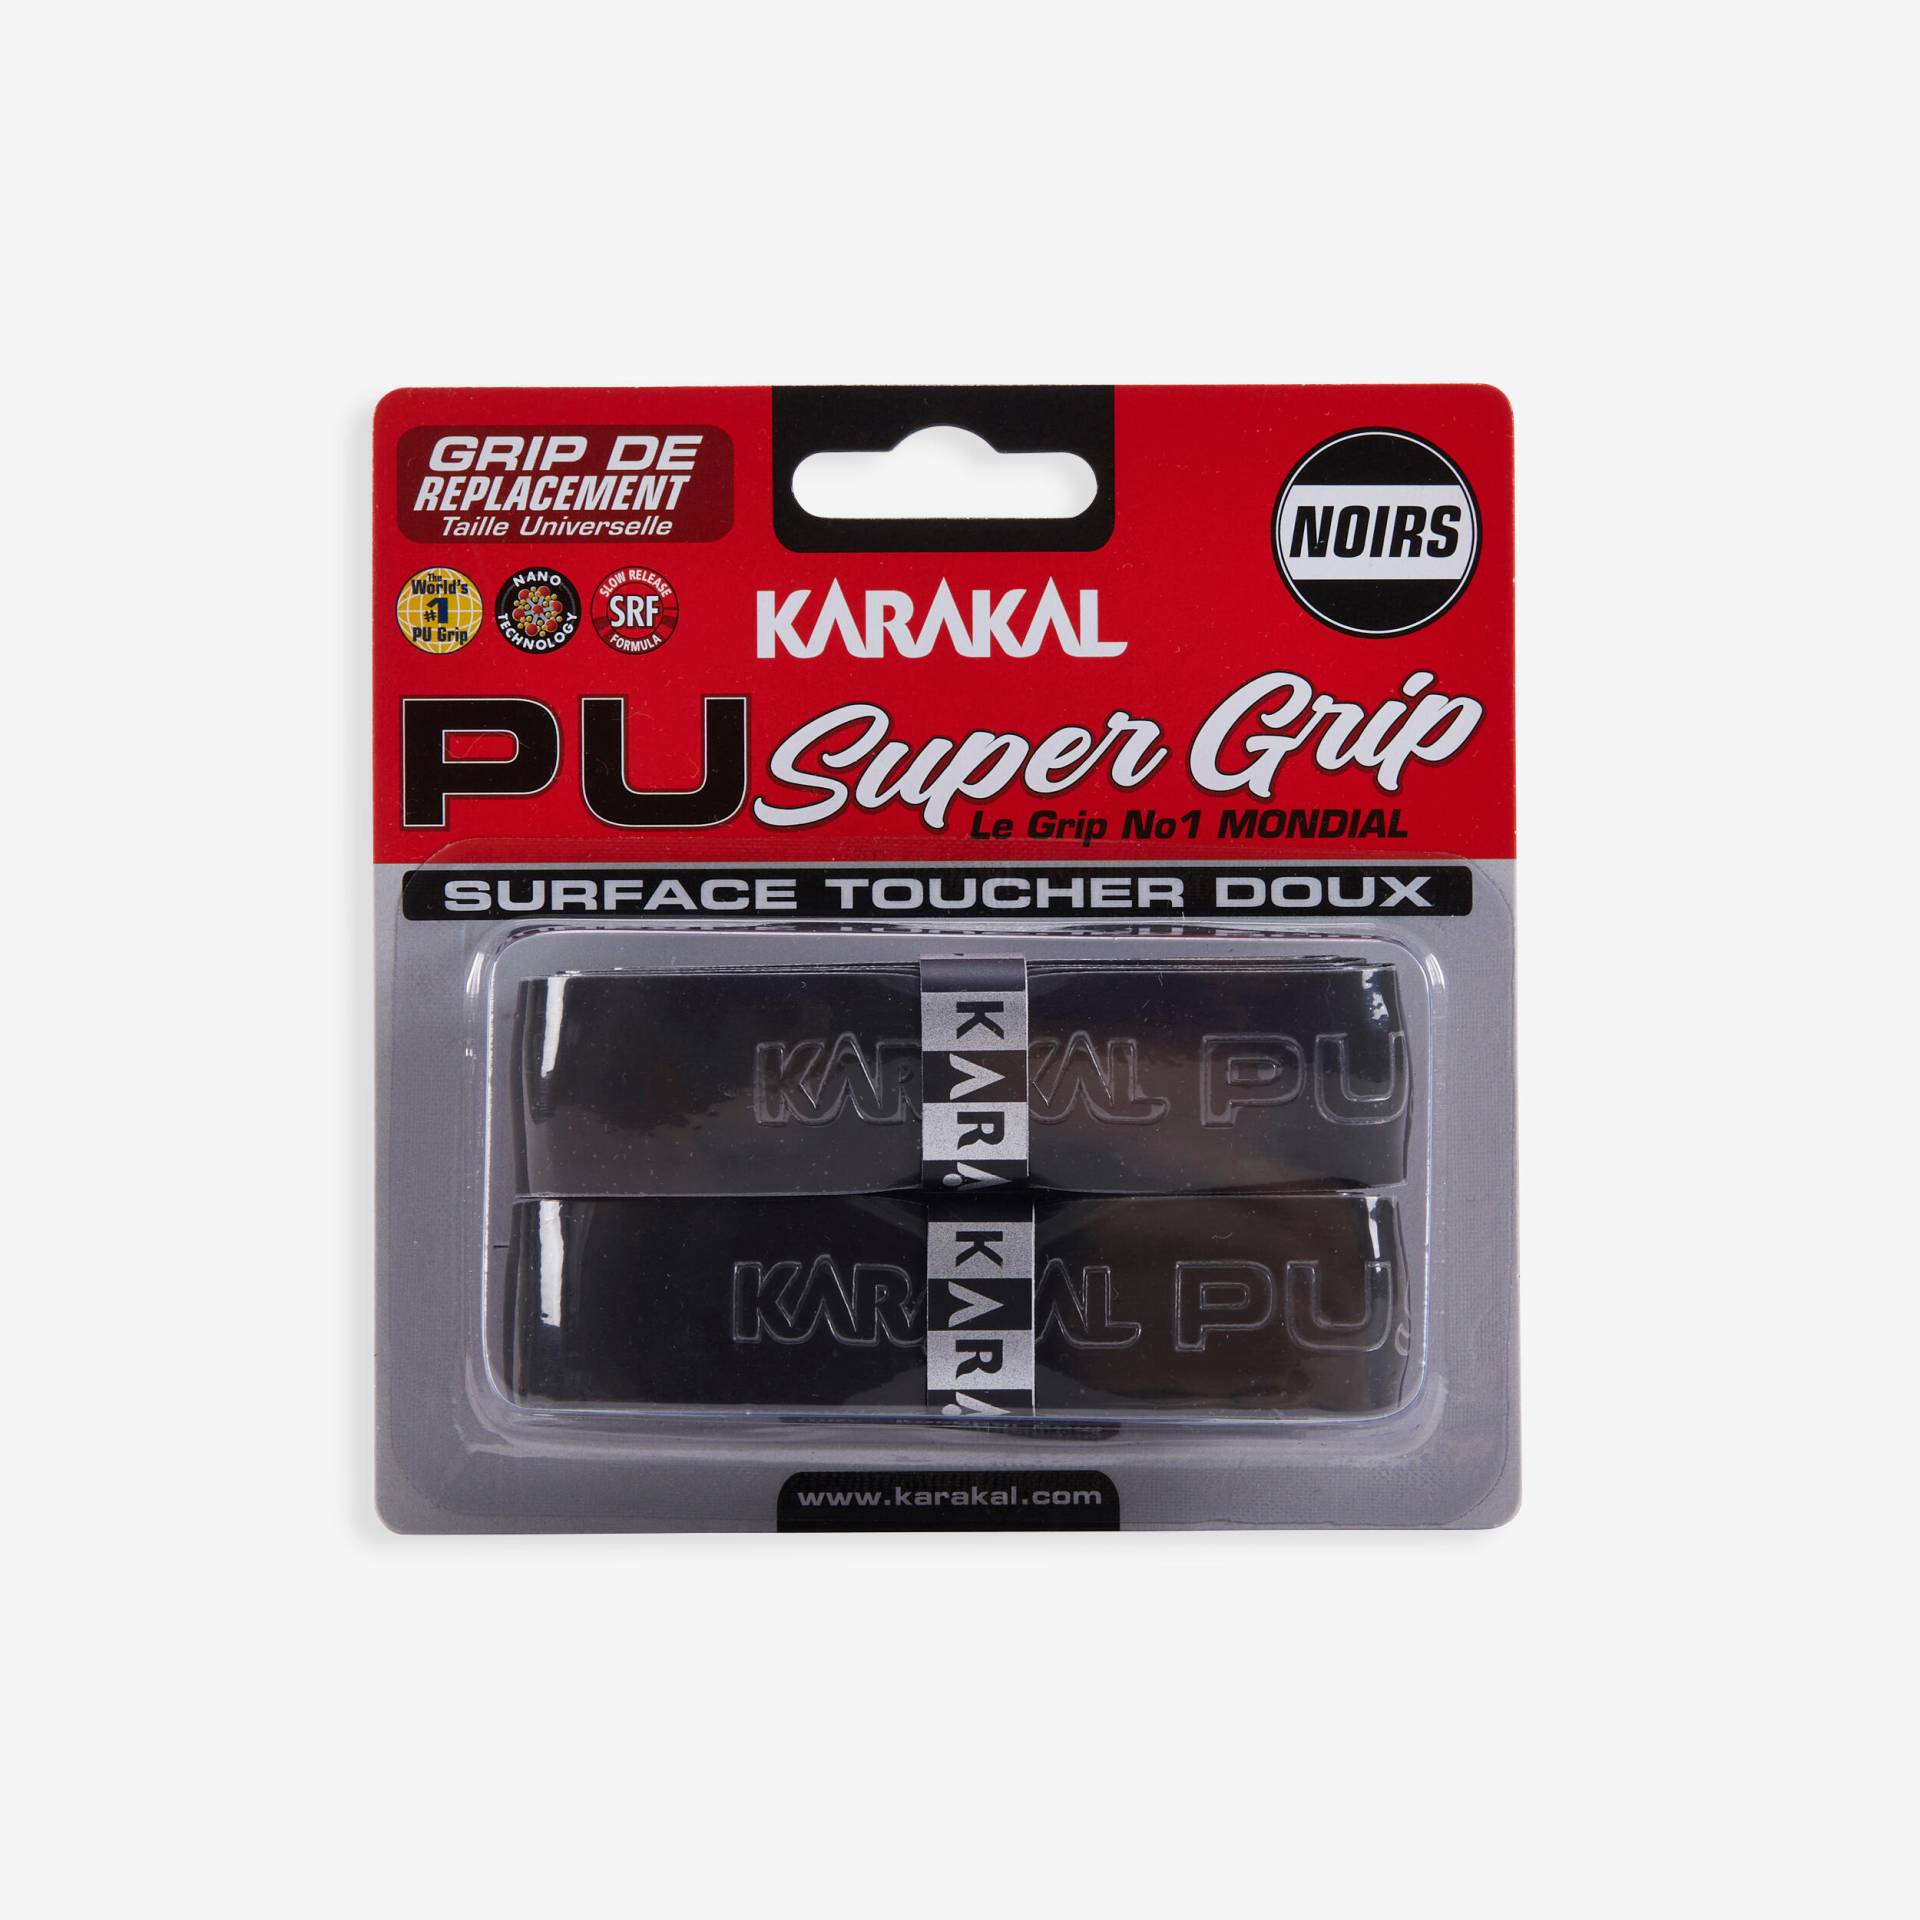 Squash Griffband - PU Super Grip 2 St. schwarz von Karakal